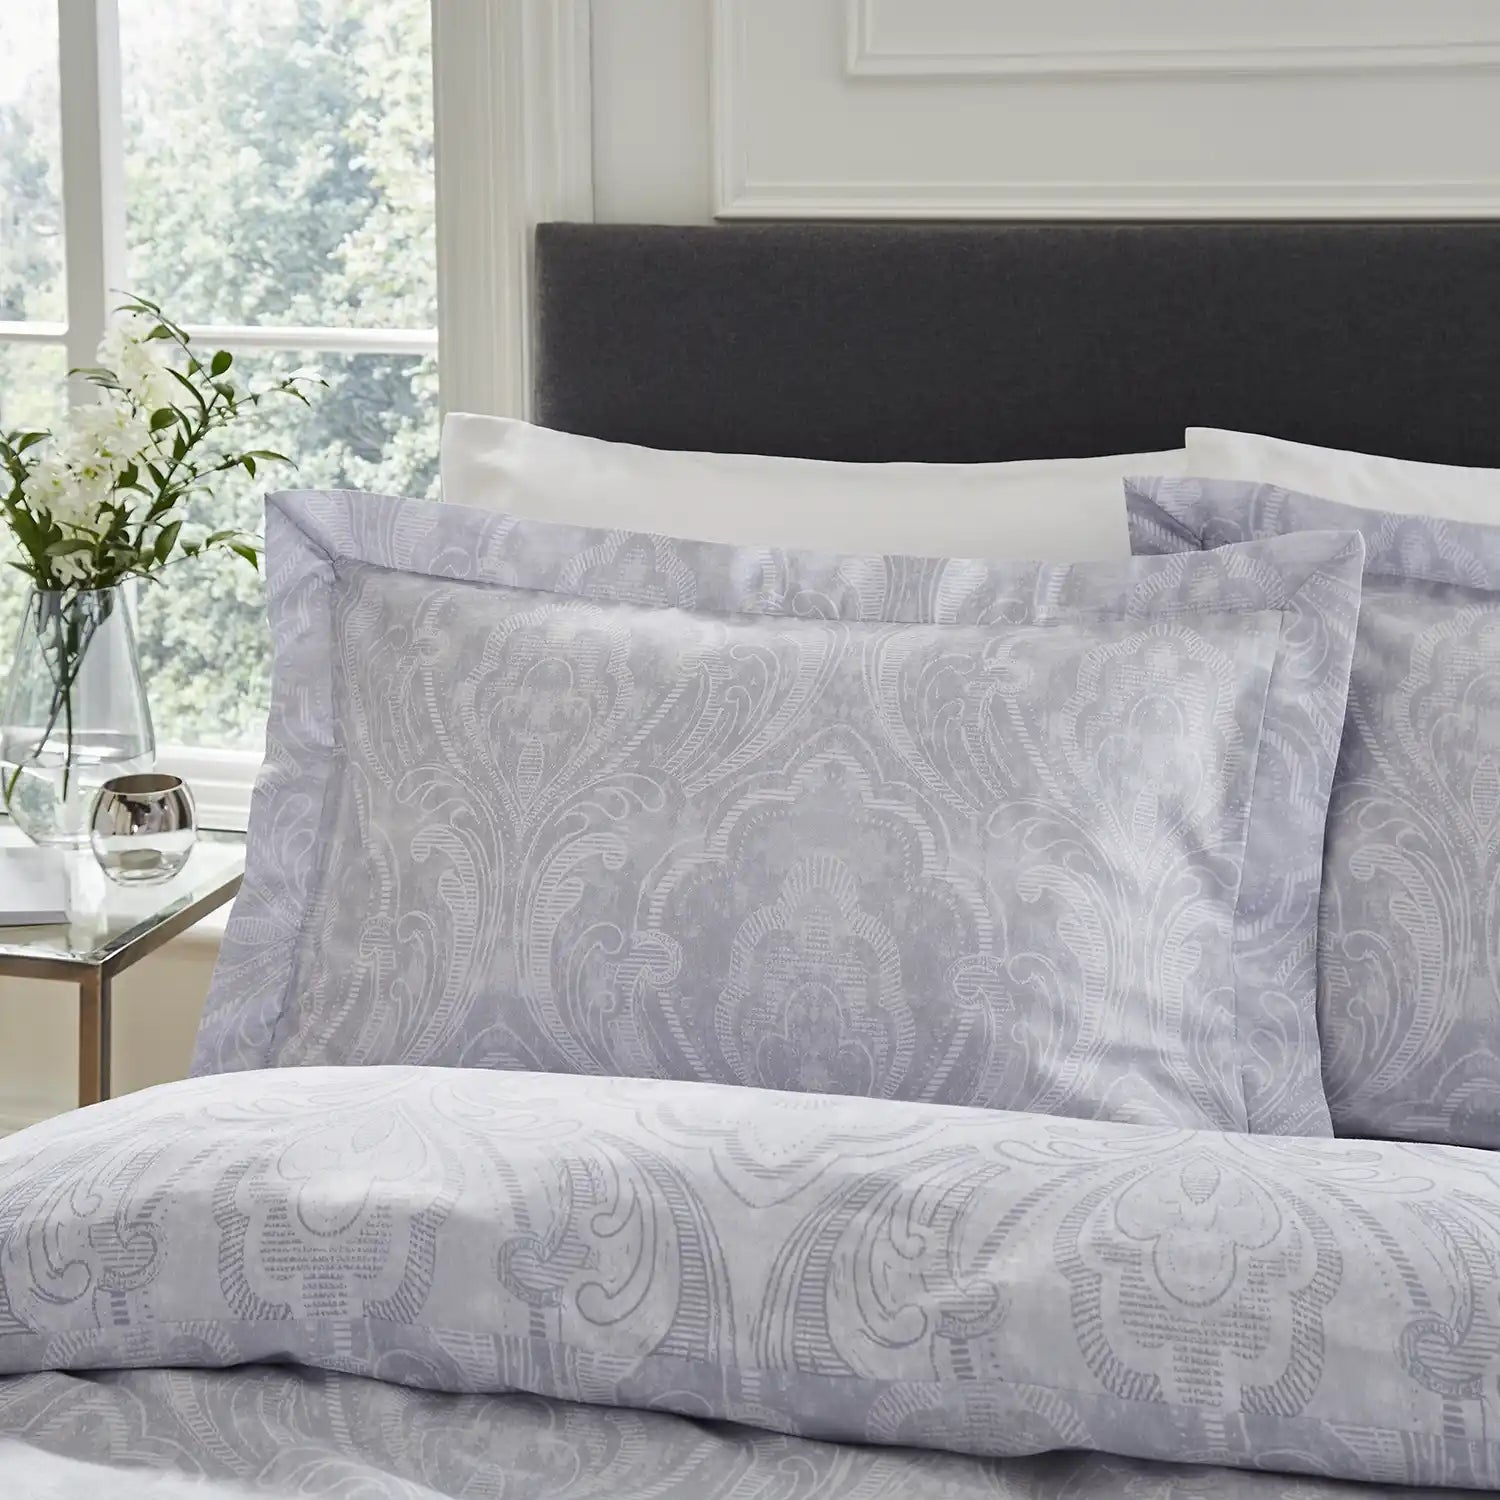 Dorma Aurelia Damask Pillowcase - Grey/White - Oxford Style 1 Shaws Department Stores